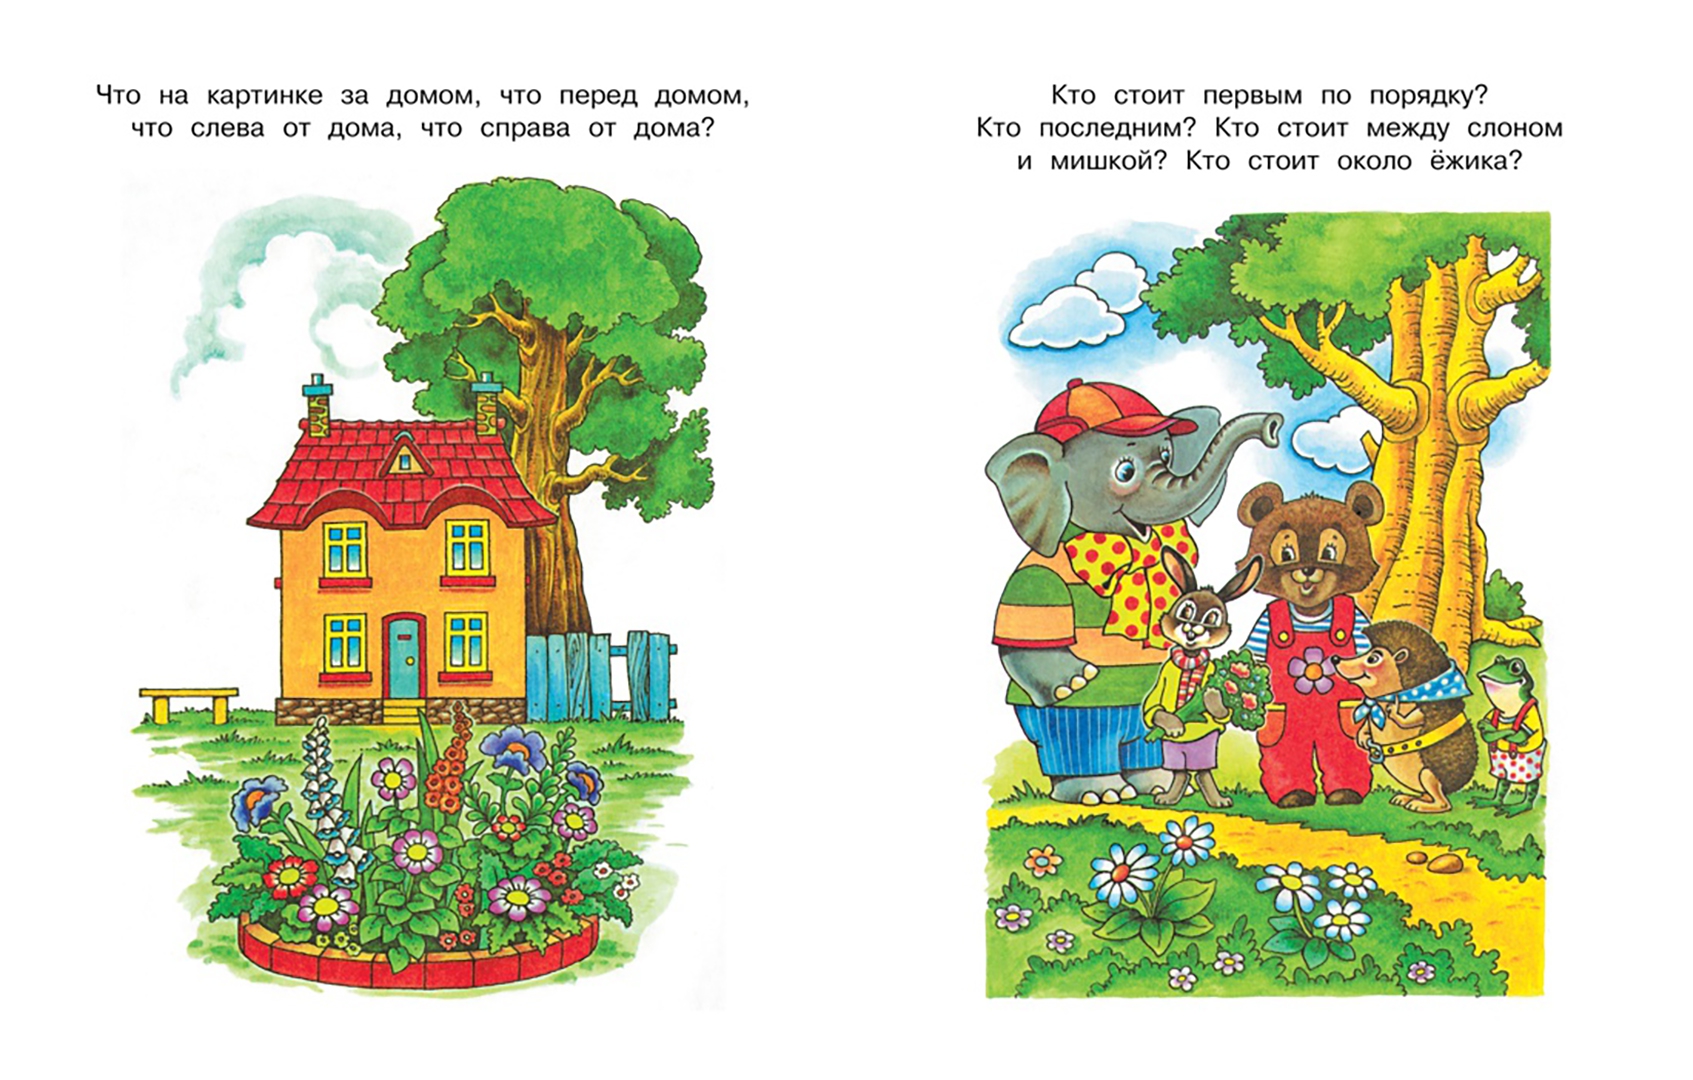 Влева вправа. Земцова о.н. "умные книжки. Вправо-влево, вверх-вниз (3-4 года)". Ориентировка в пространстве для детей. Ориентировка в пространстве верх низ. Ориентация в пространстве для детей.